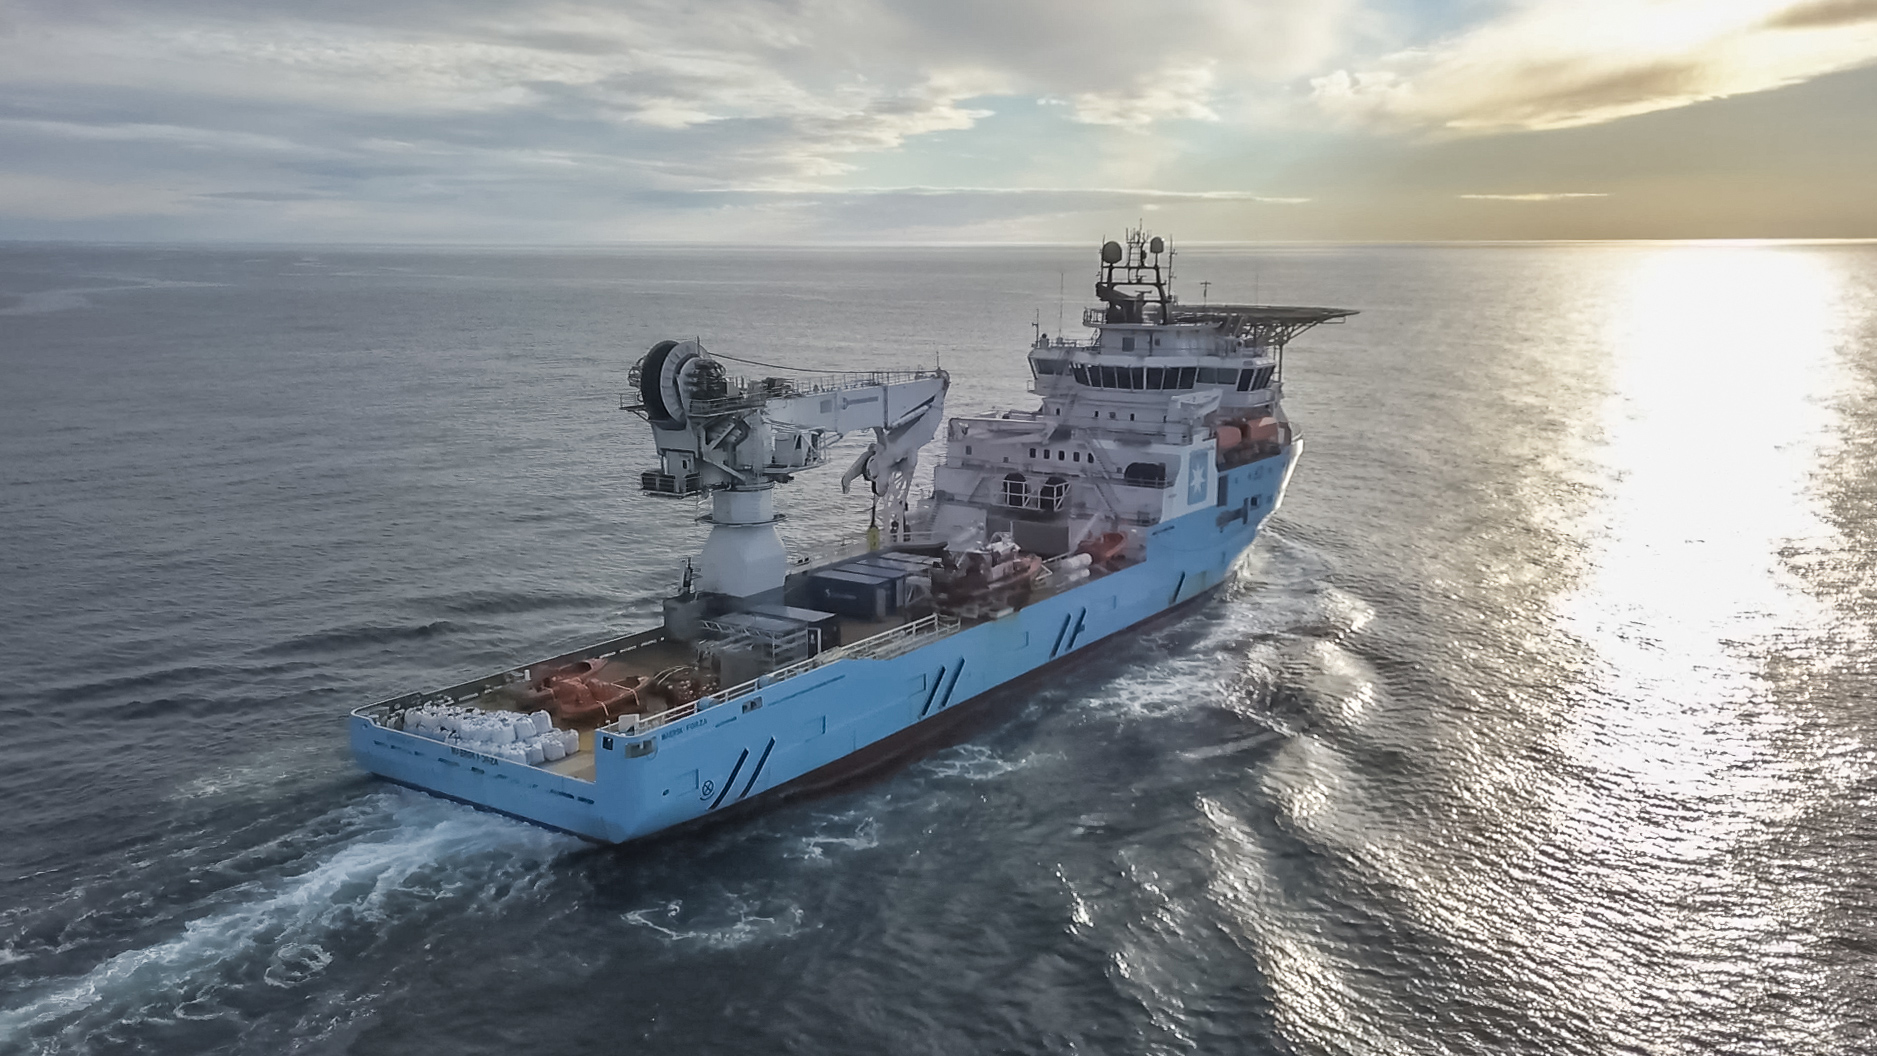 Neptune picks Maersk Supply for UK decommissioning job